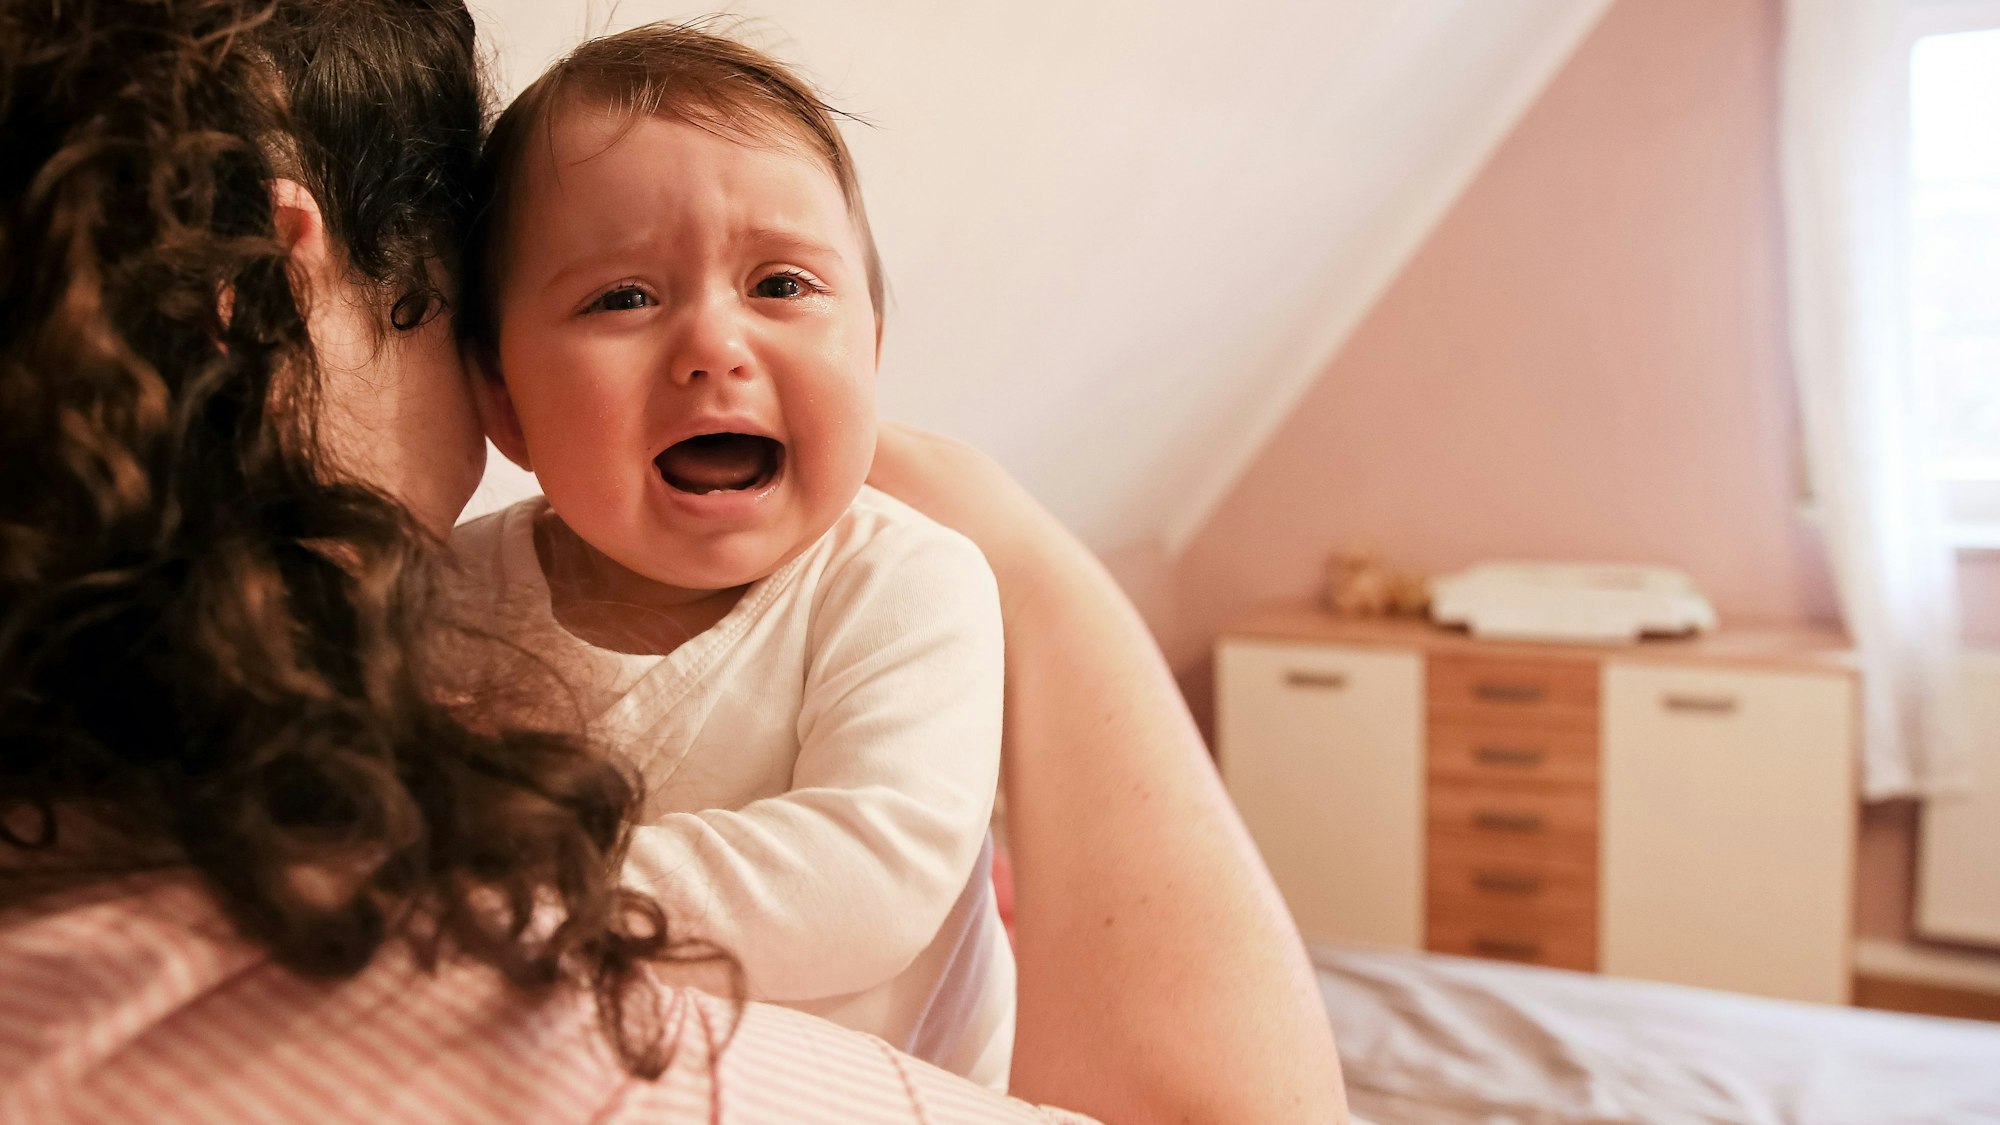 Eine Mutter ist von hinten im Bett sitzend zu sehen, sie hält ein weinendes Baby auf dem Arm, das in die Kamera guckt.